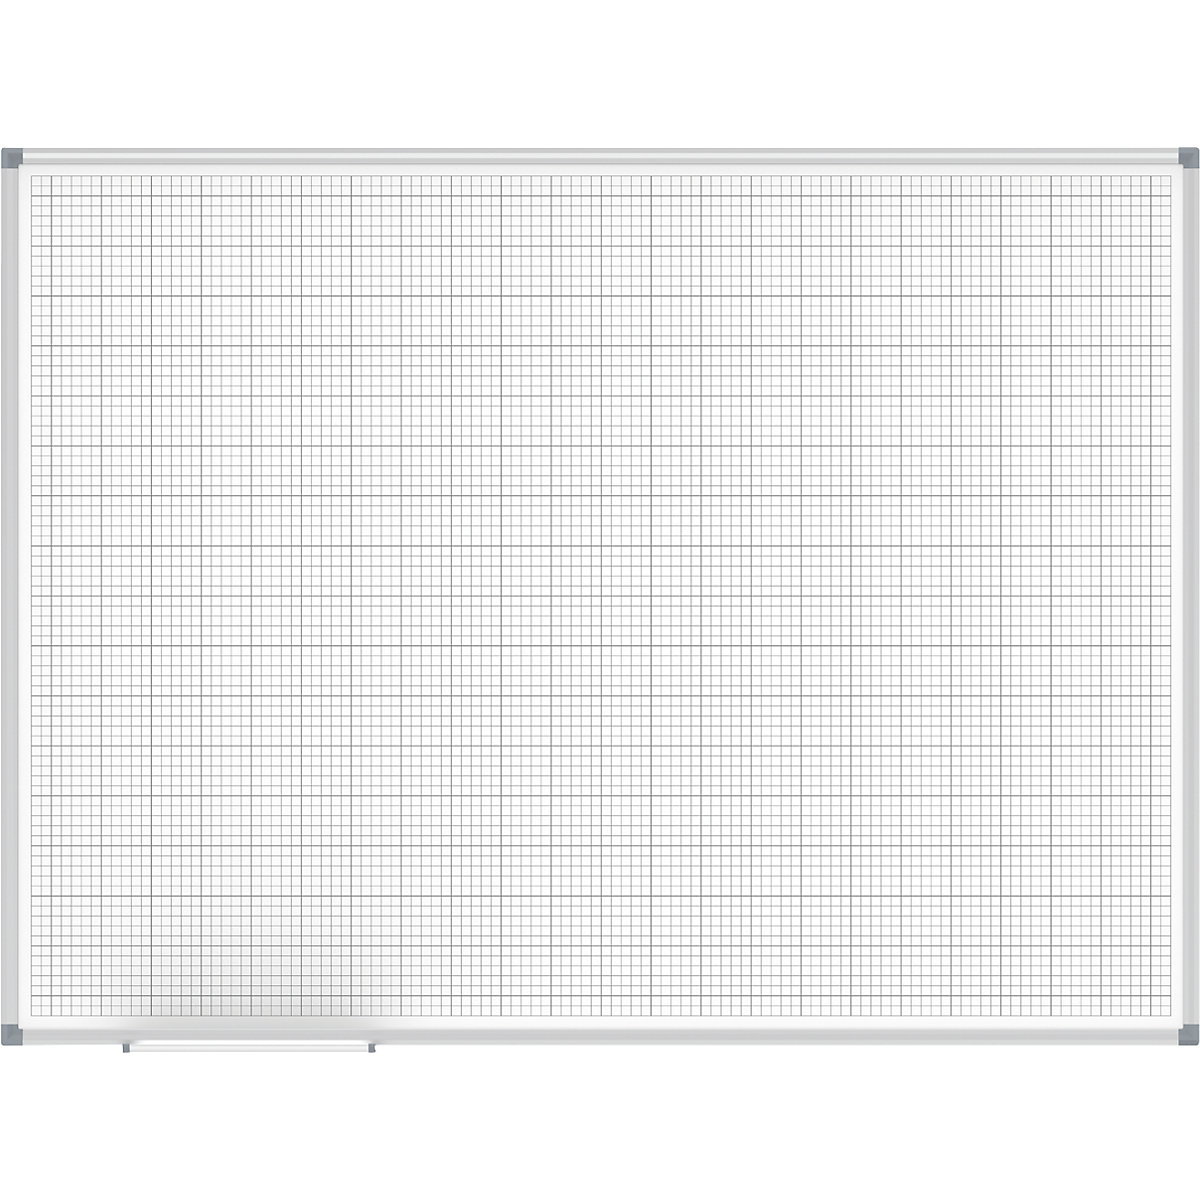 MAULstandard grid board, white – MAUL, grid 10 x 10 / 50 x 50 mm, WxH 1200 x 900 mm-4